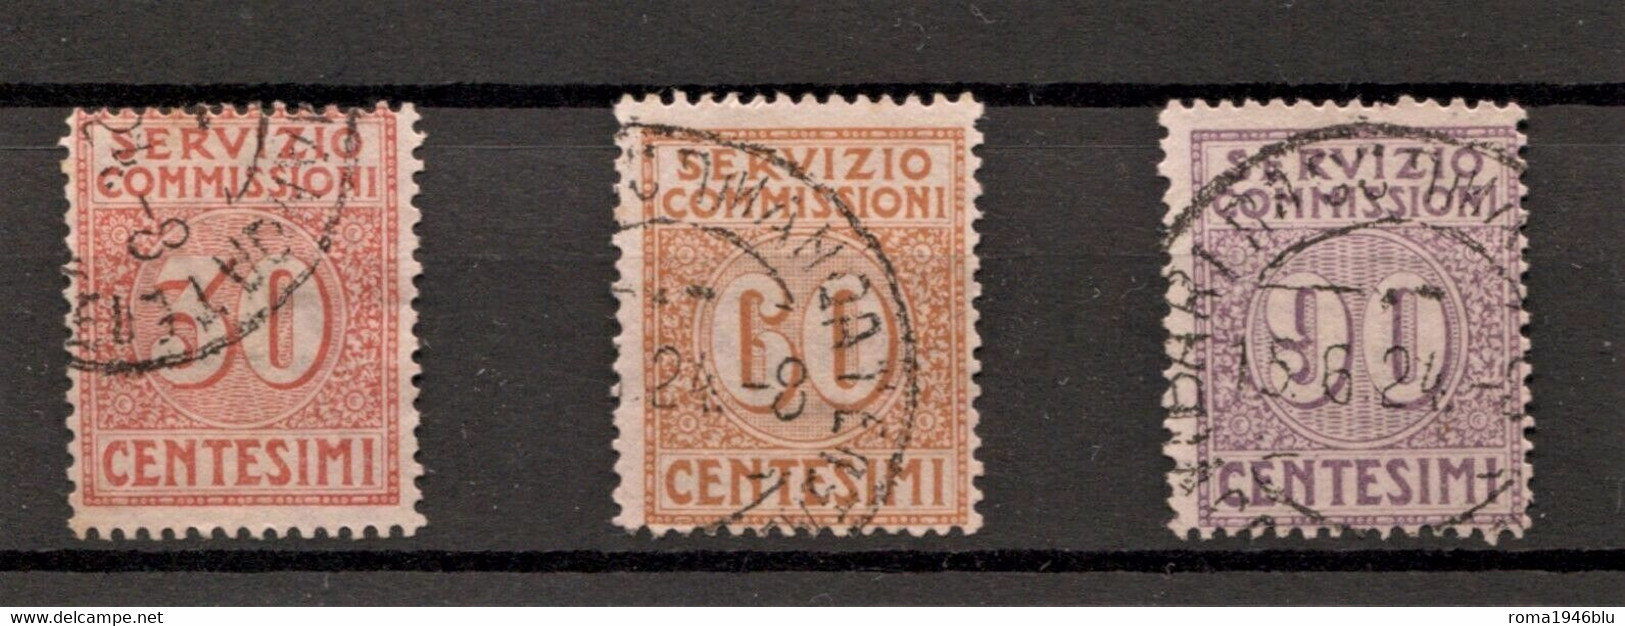 REGNO 1913 SERVIZIO COMMISSIONI SERIE CPL. ANNULLATA - Postage Due